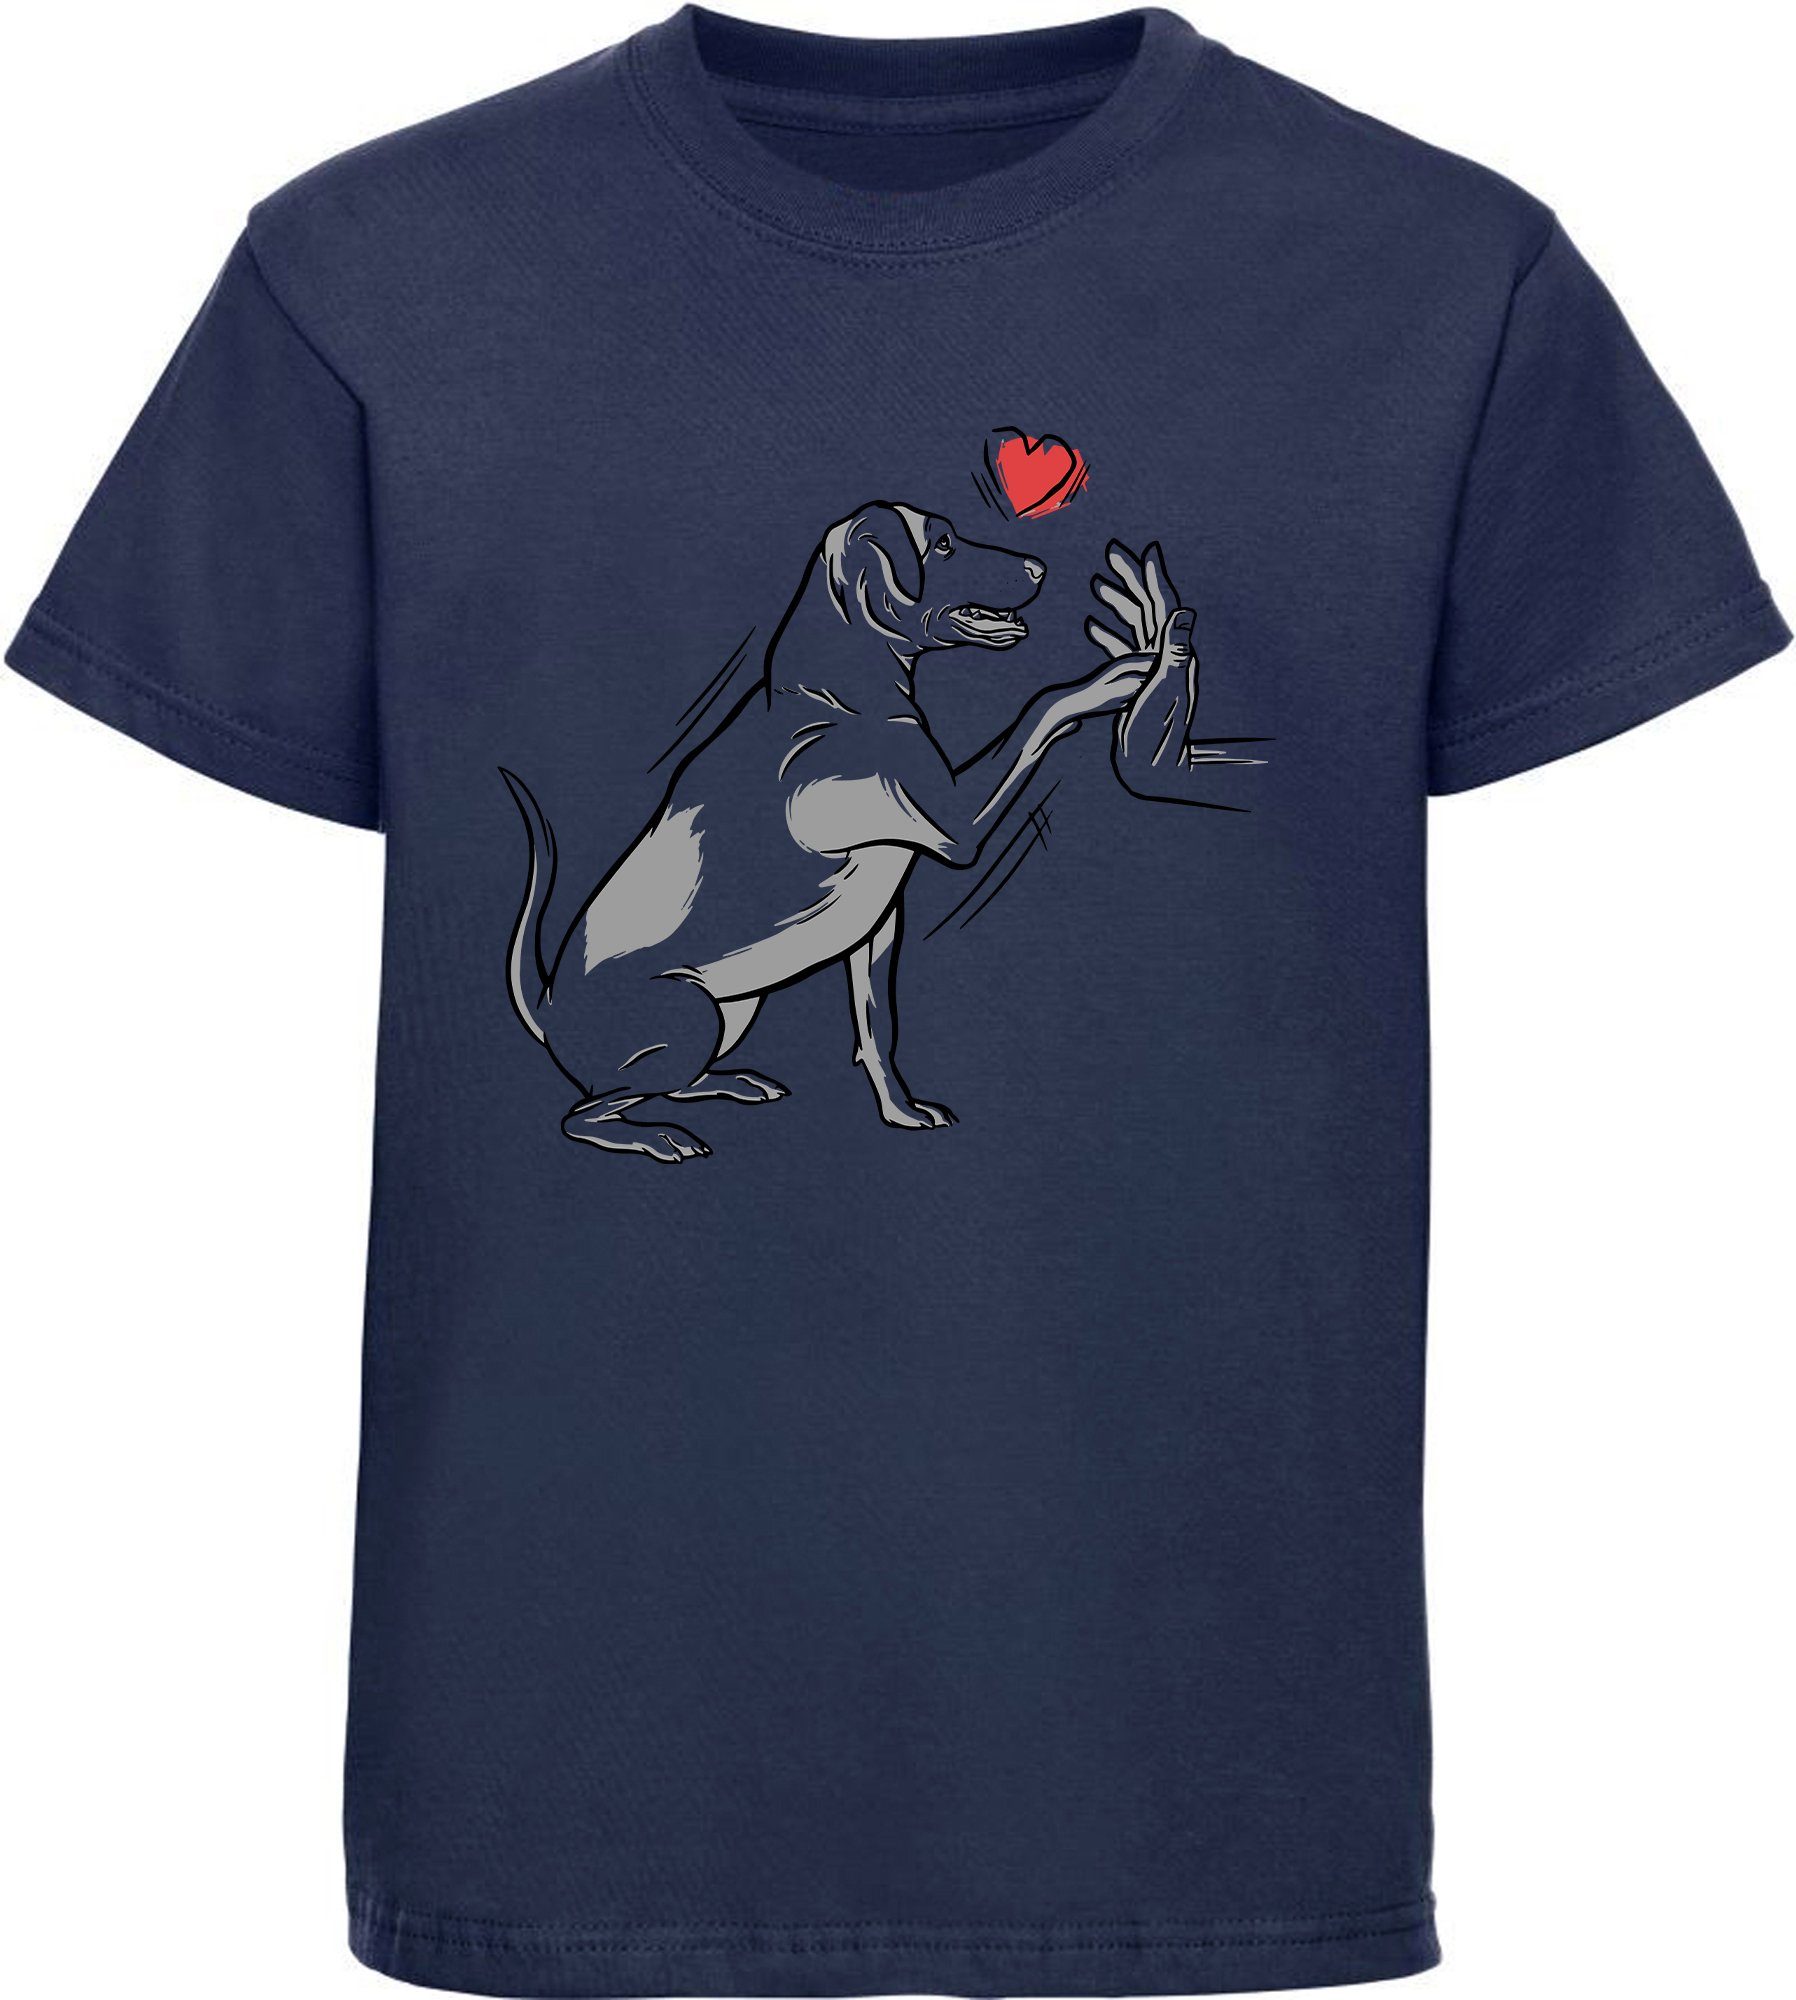 MyDesign24 Print-Shirt Kinder Hunde T-Shirt bedruckt - Labrador gibt Pfötchen Baumwollshirt mit Aufdruck, i234 navy blau